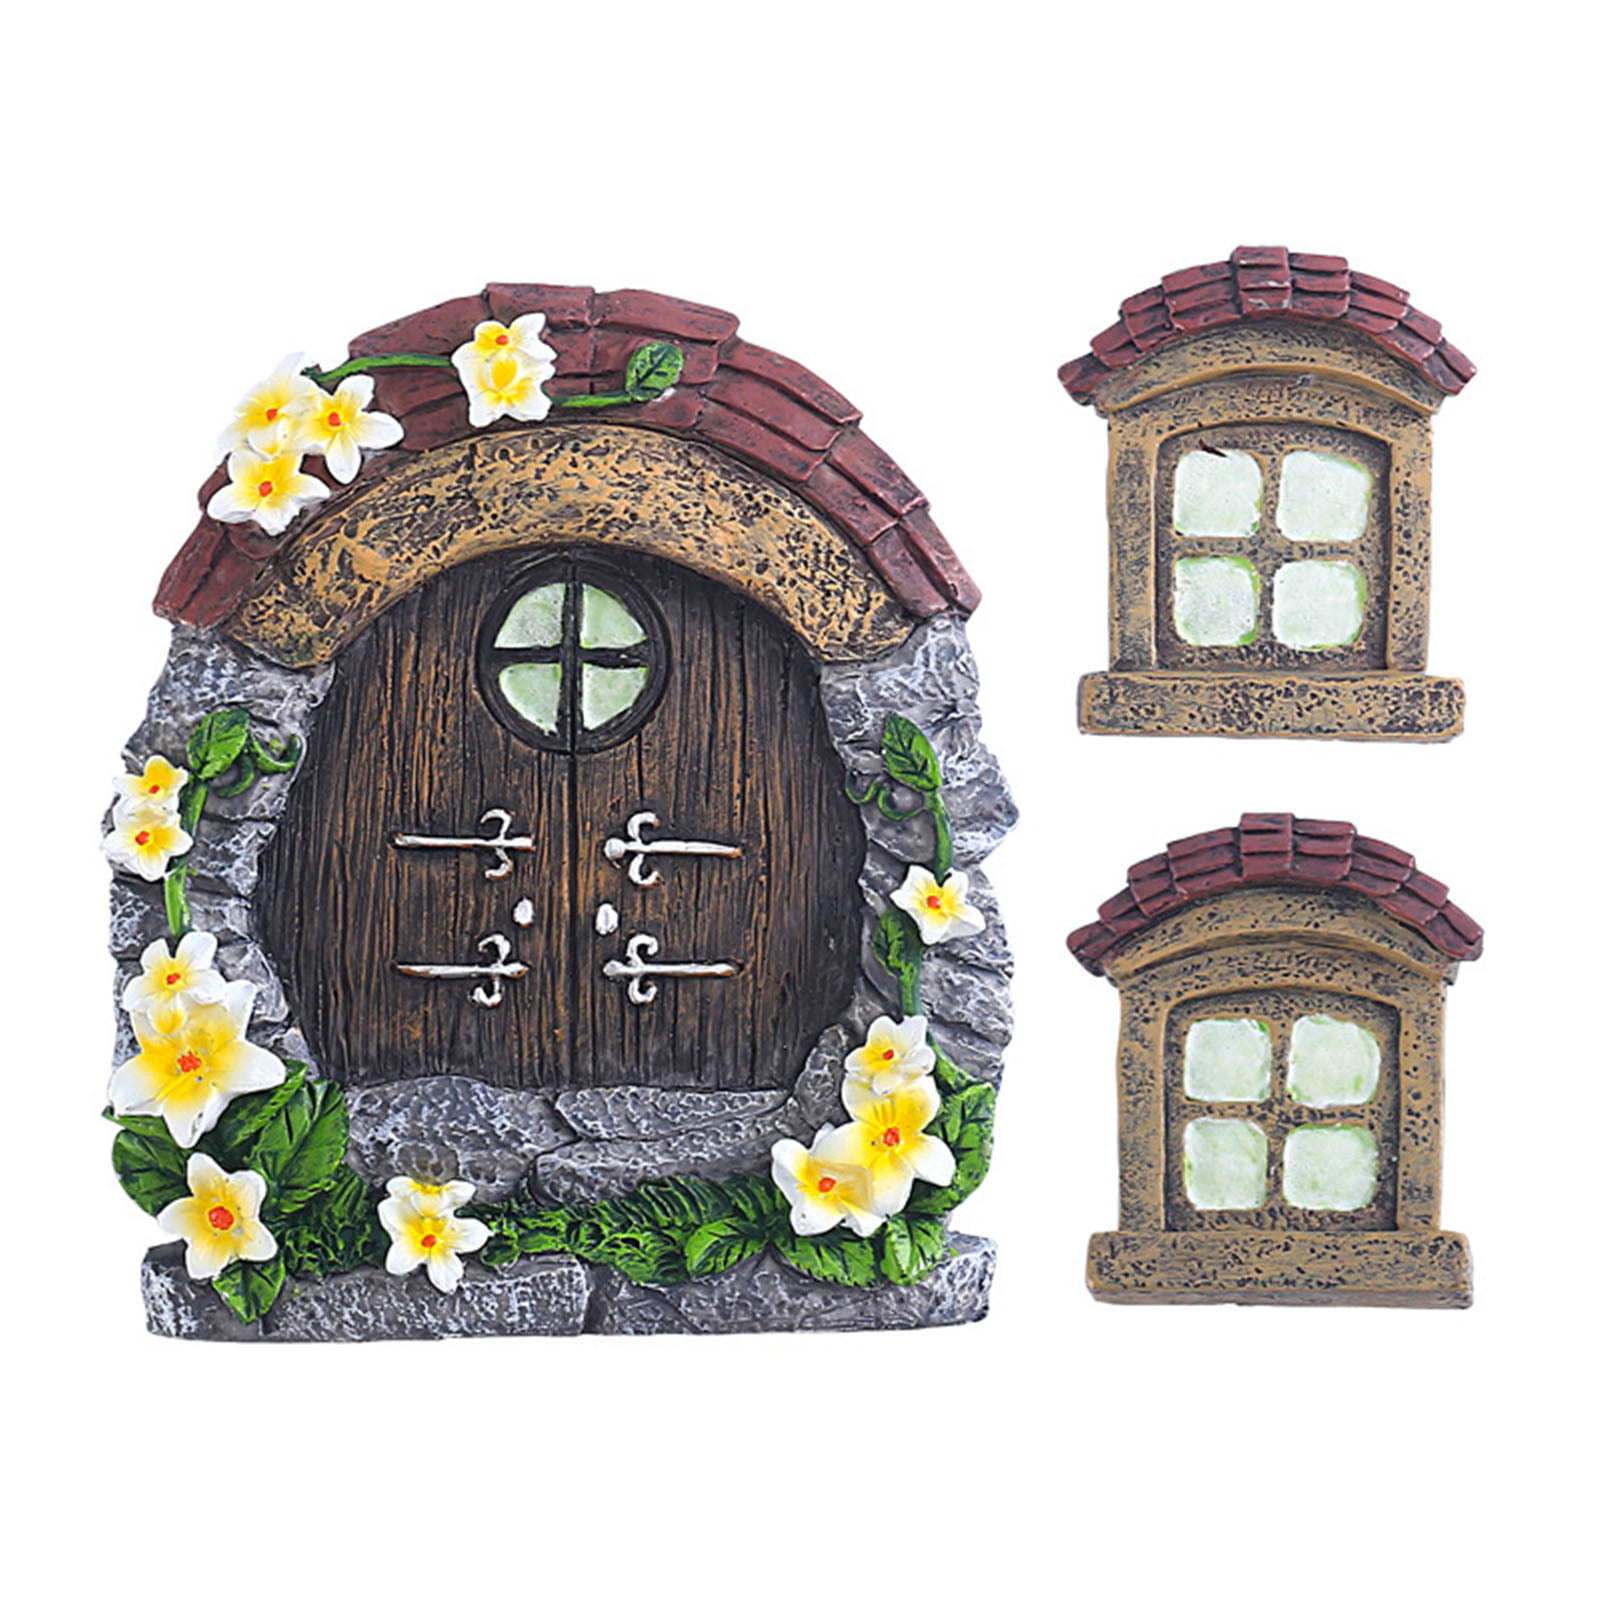 Fairy Garden Stump House with Working Door NW Wholesaler 